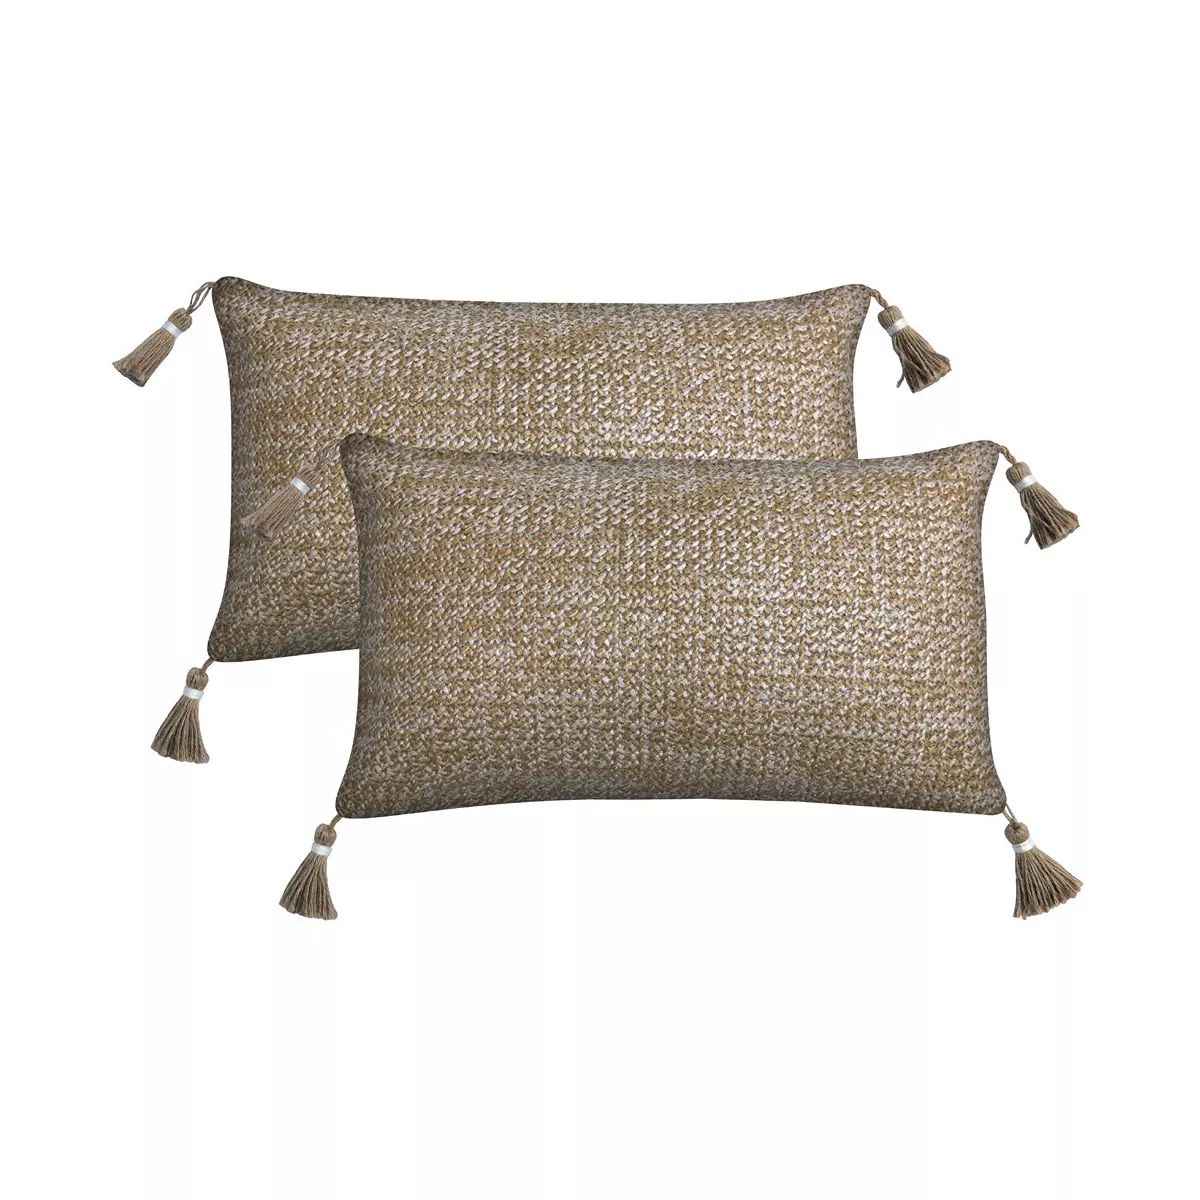 Honeycomb Outdoor Raffia Natural Toss Pillows (2-Pack) | Target